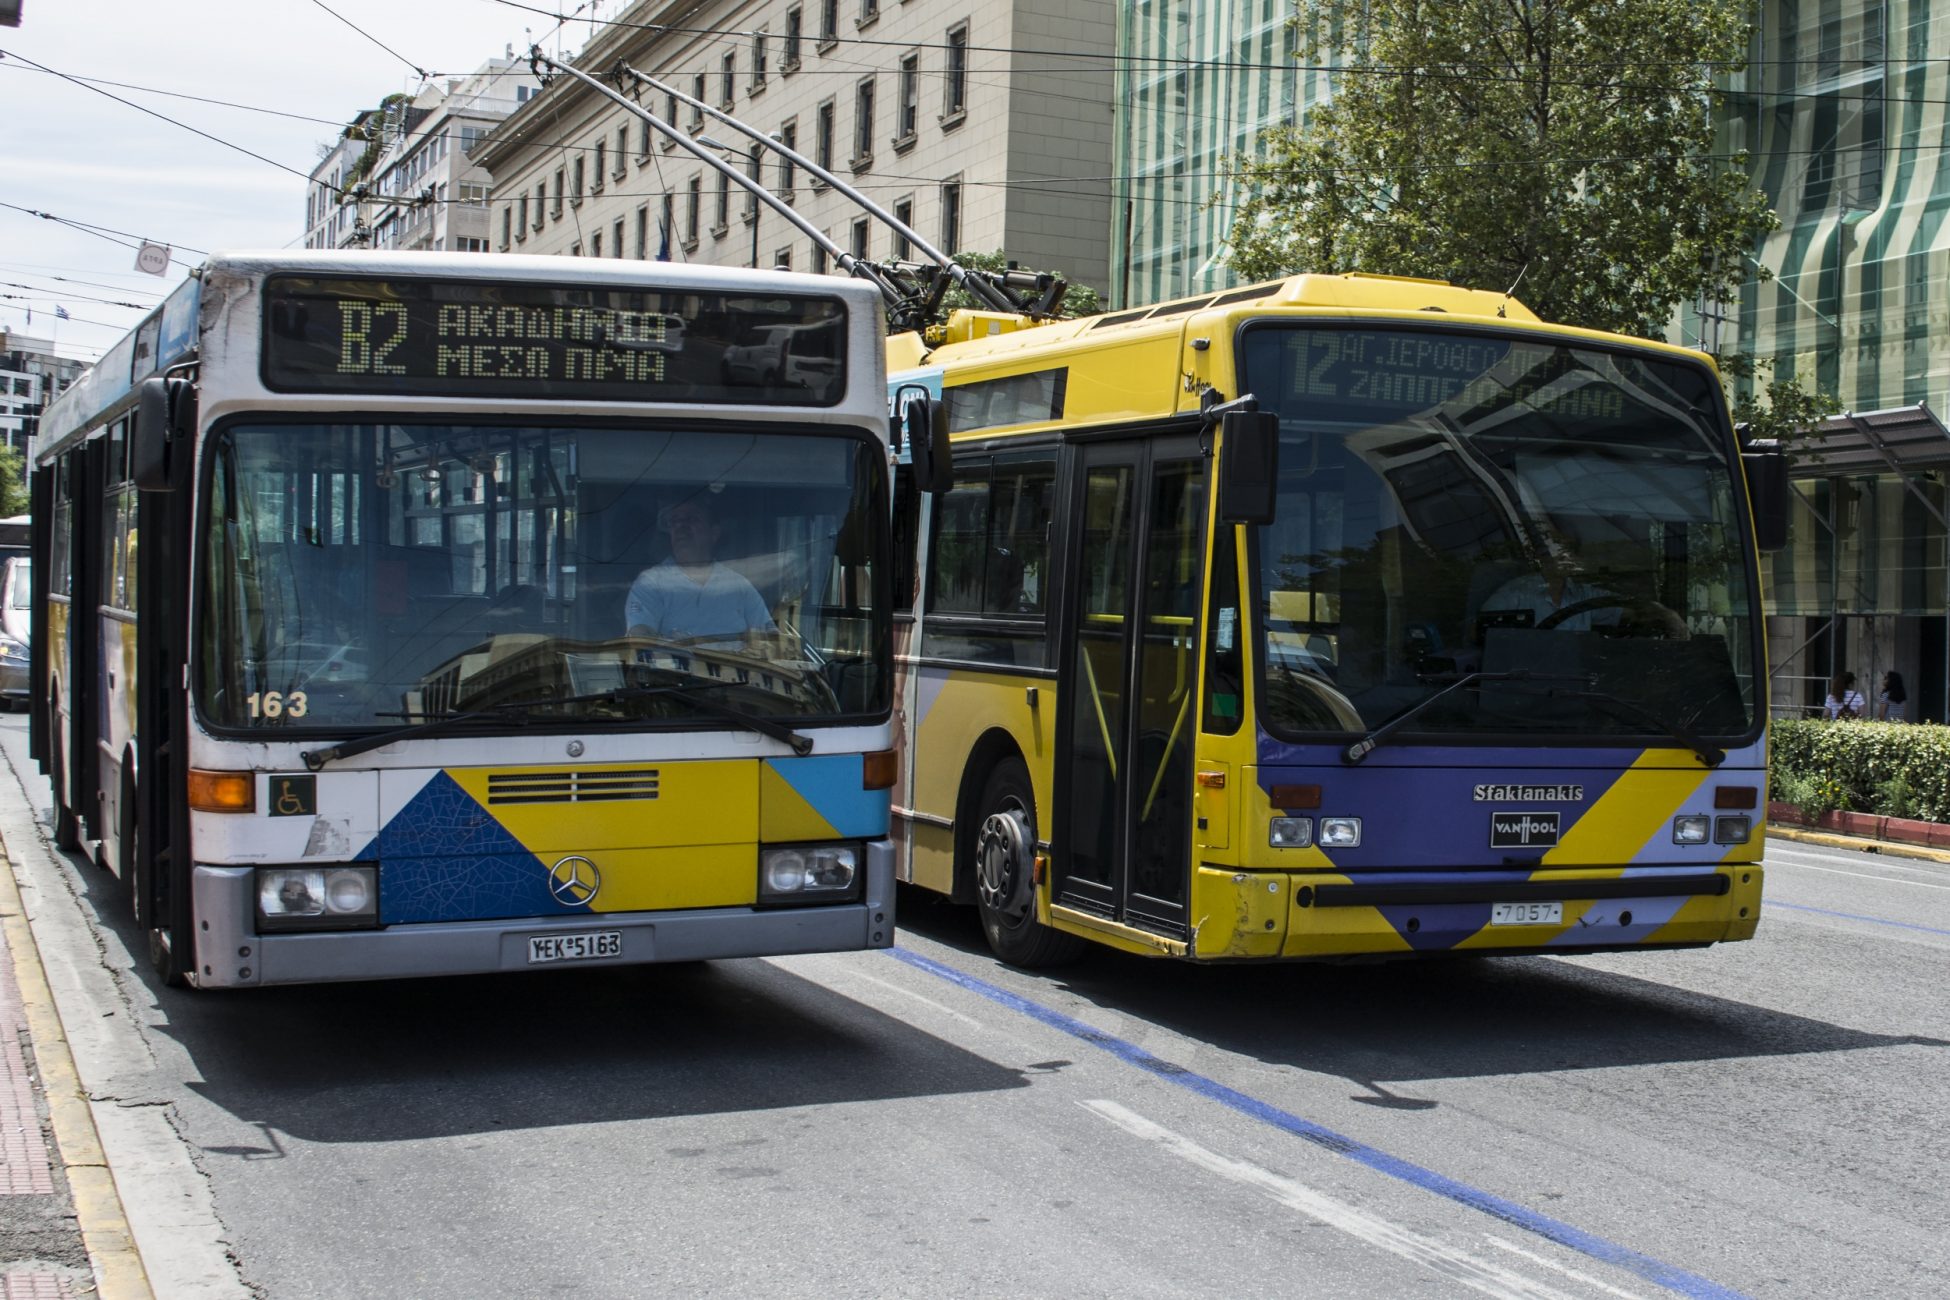 Προκηρύχθηκε ο διαγωνισμός για την προμήθεια 300 λεωφορείων